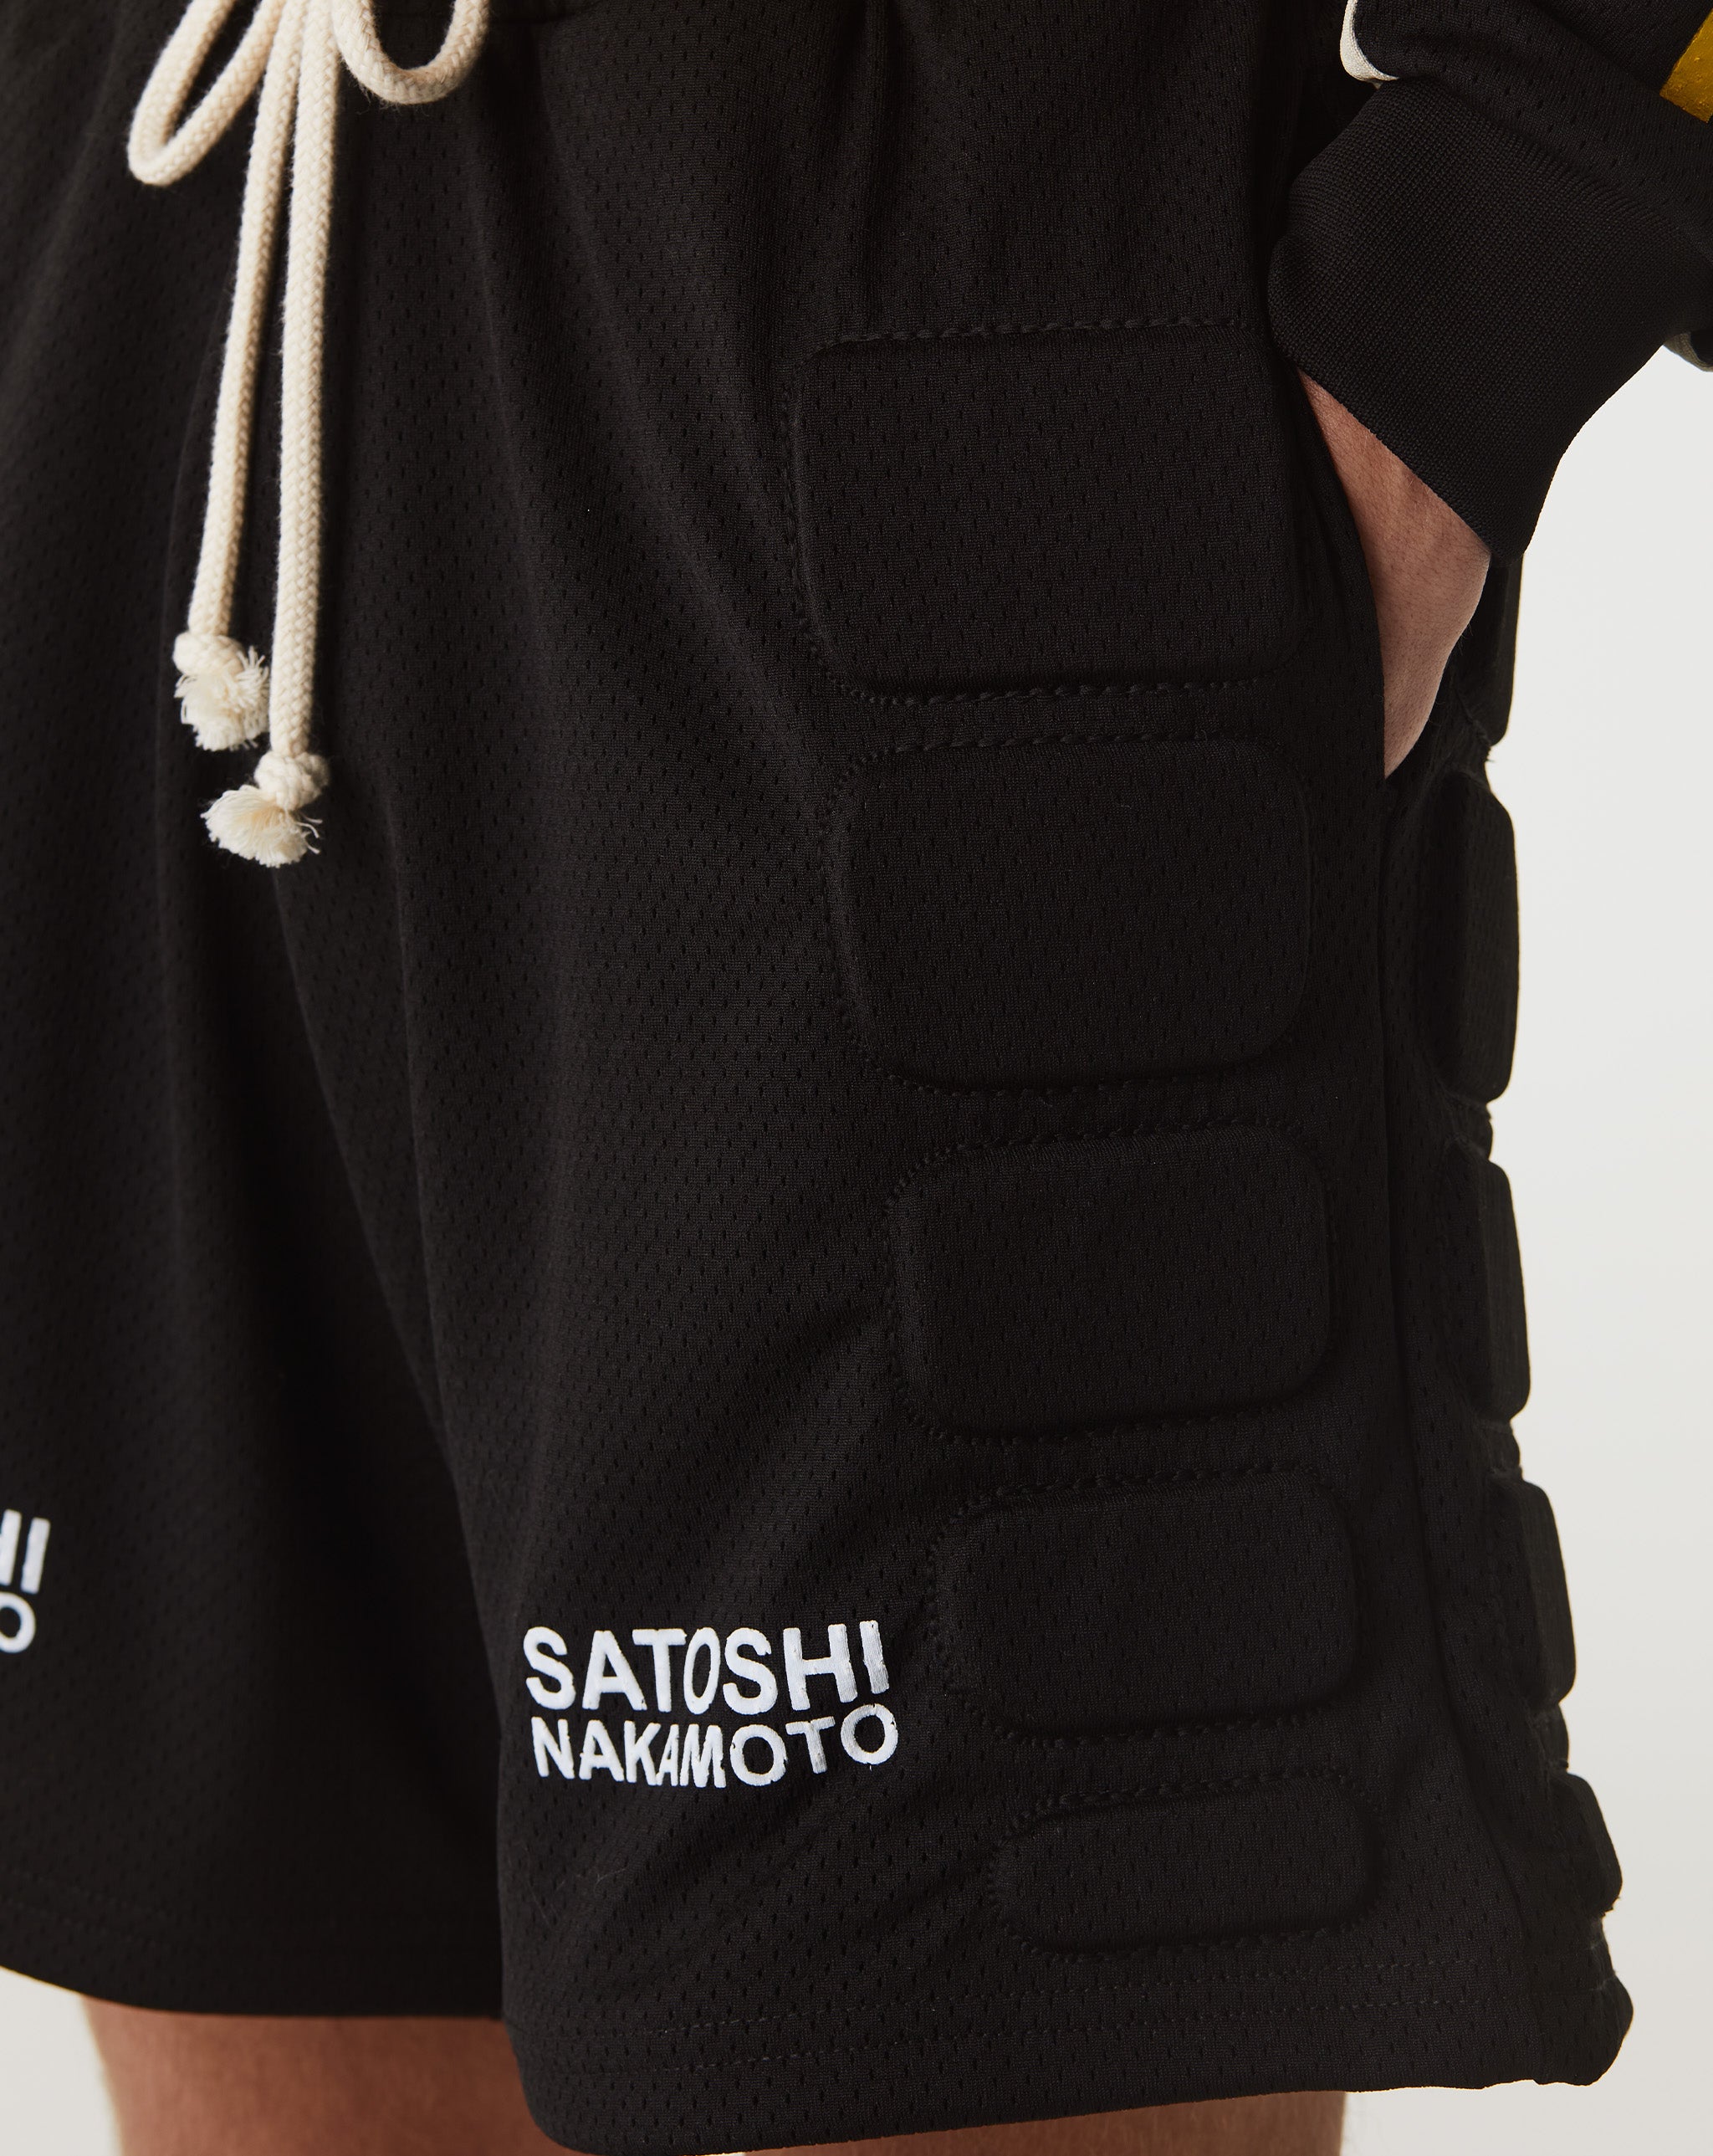 Satoshi Nakamoto Tech Giants T-Shirt  - Cheap Erlebniswelt-fliegenfischen Jordan outlet